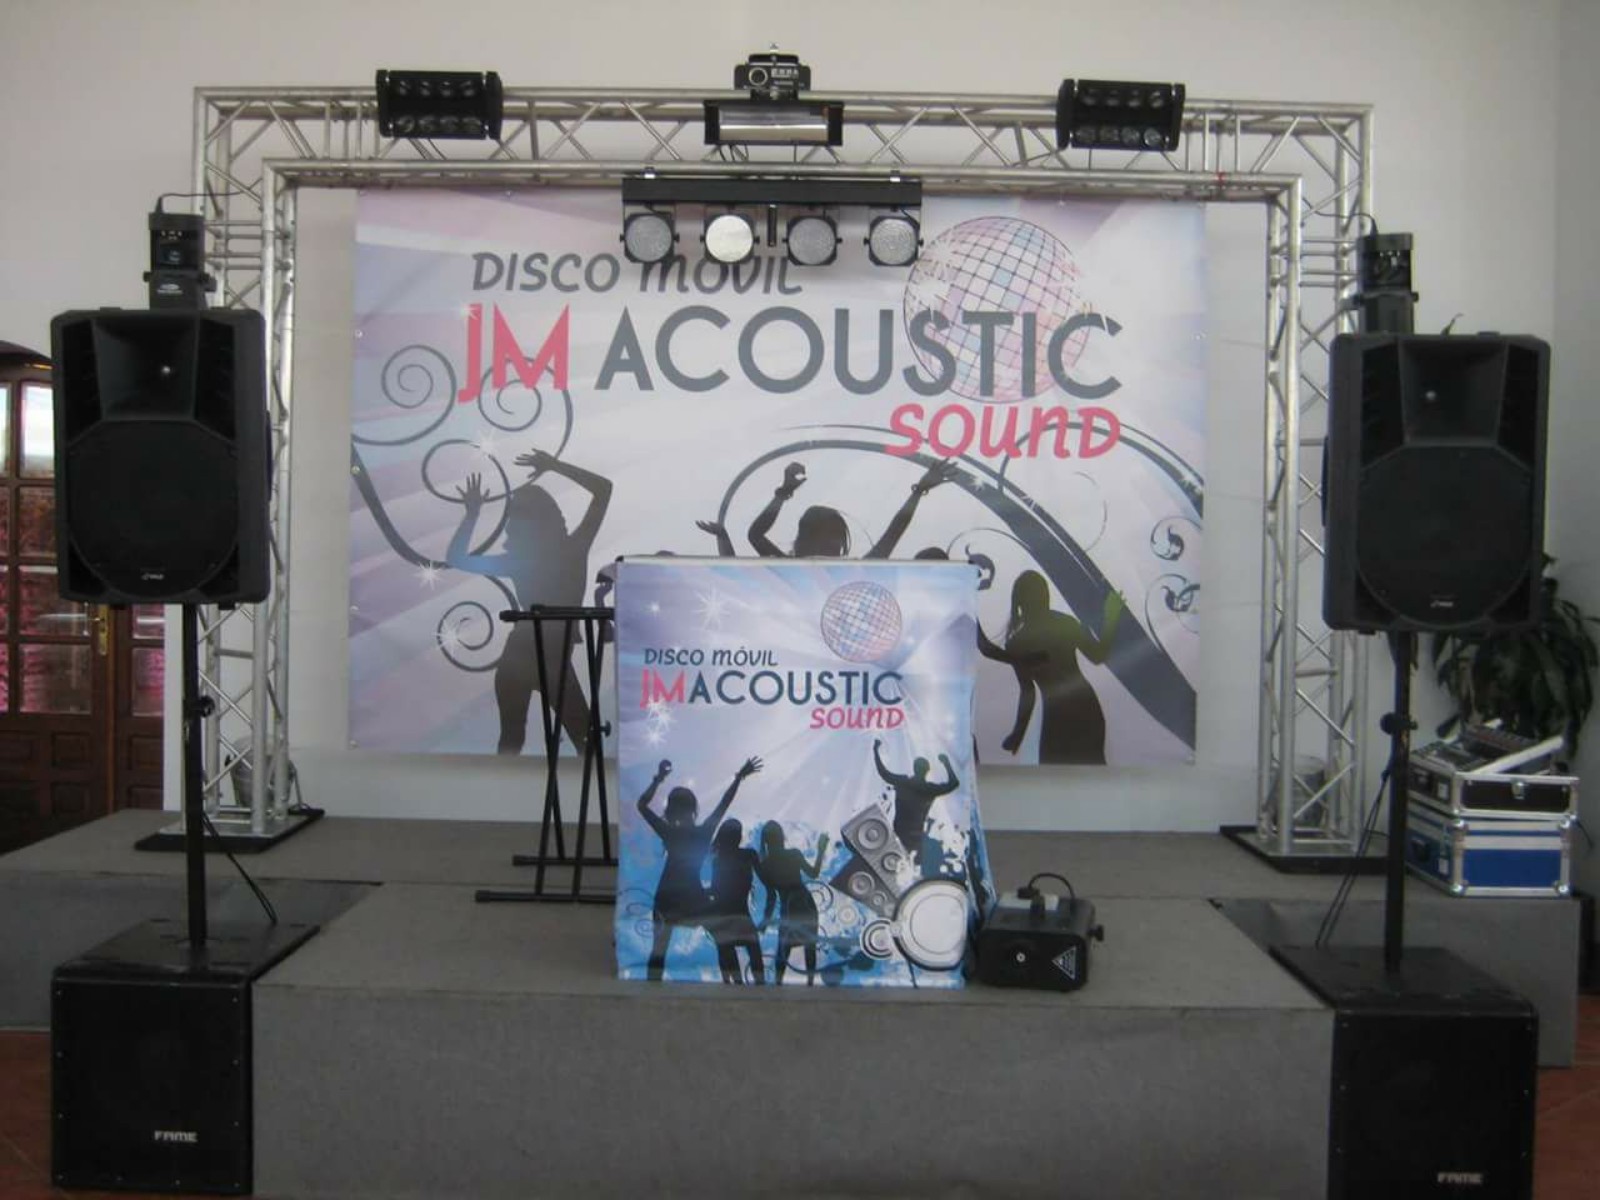 Discomóvil Jm Acoustic Sound